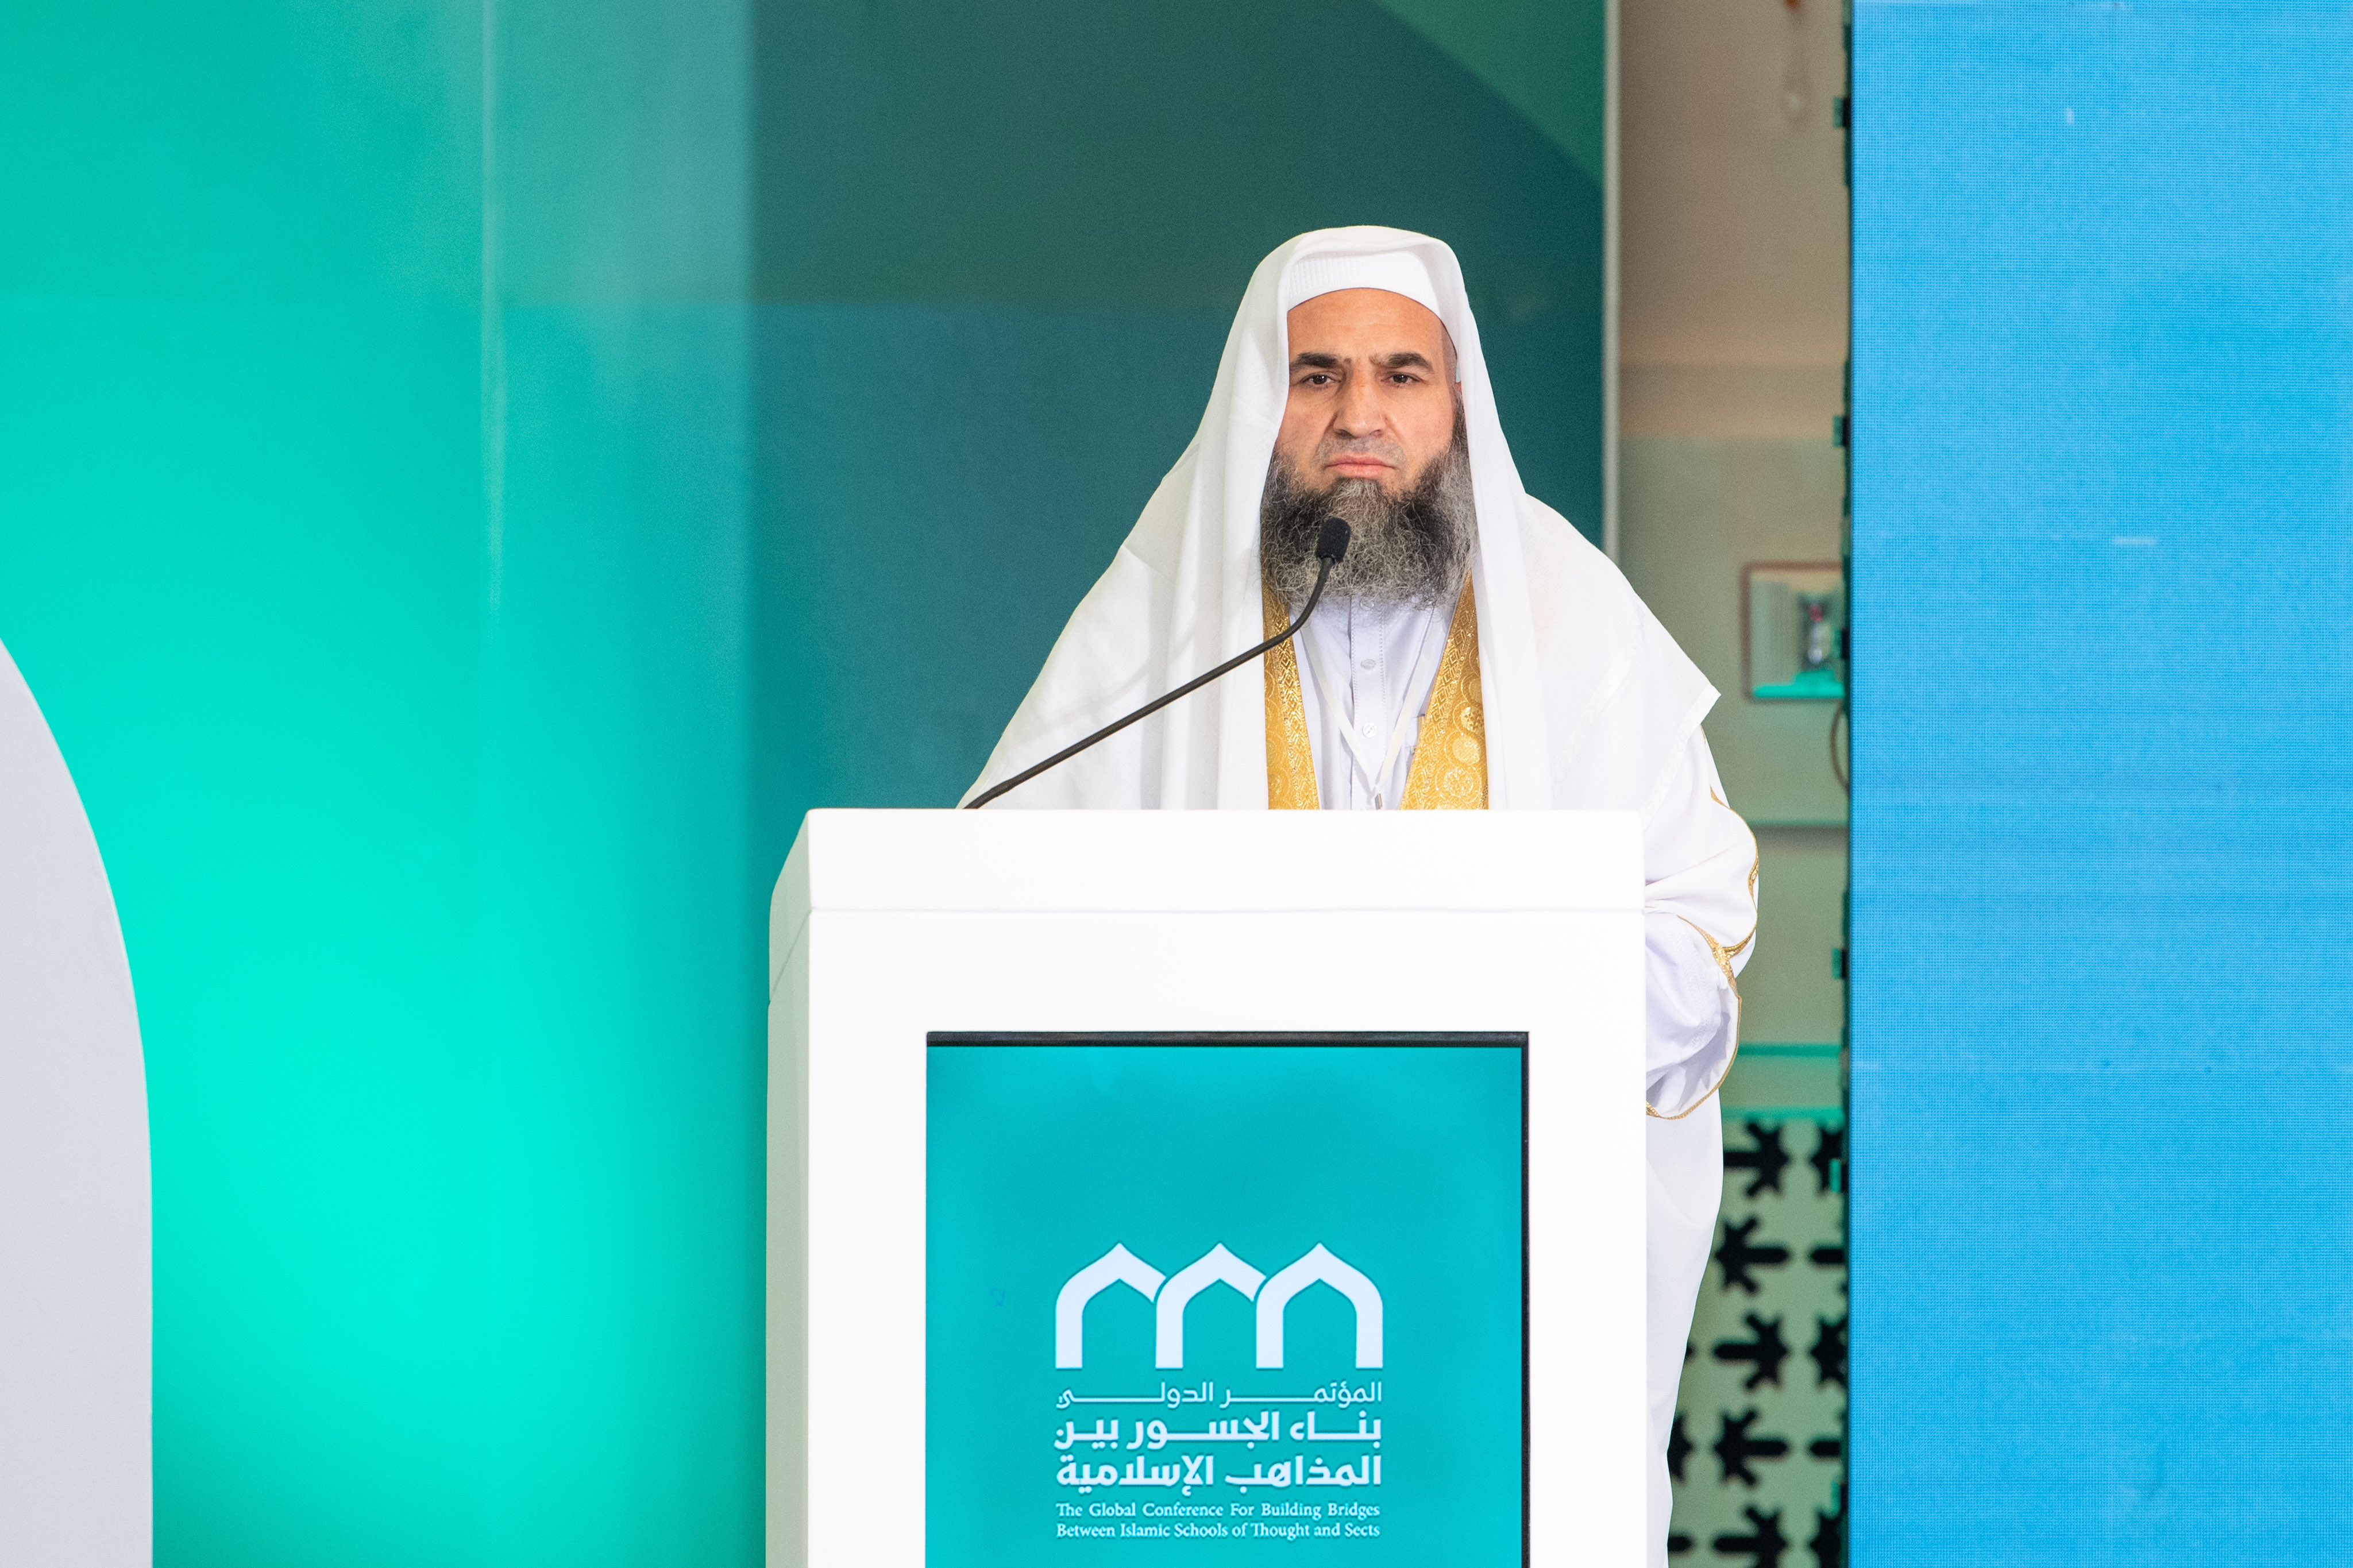 دار القرآن والسنۃ، جلال آباد، افغانستان سے شیخ احمد شاہ مخلص، اسلامی مذاہب کے درمیان پلوں کی تعمیر کانفرنس کے اختتامی اجلاس سے خطاب کرتے ہوئے: